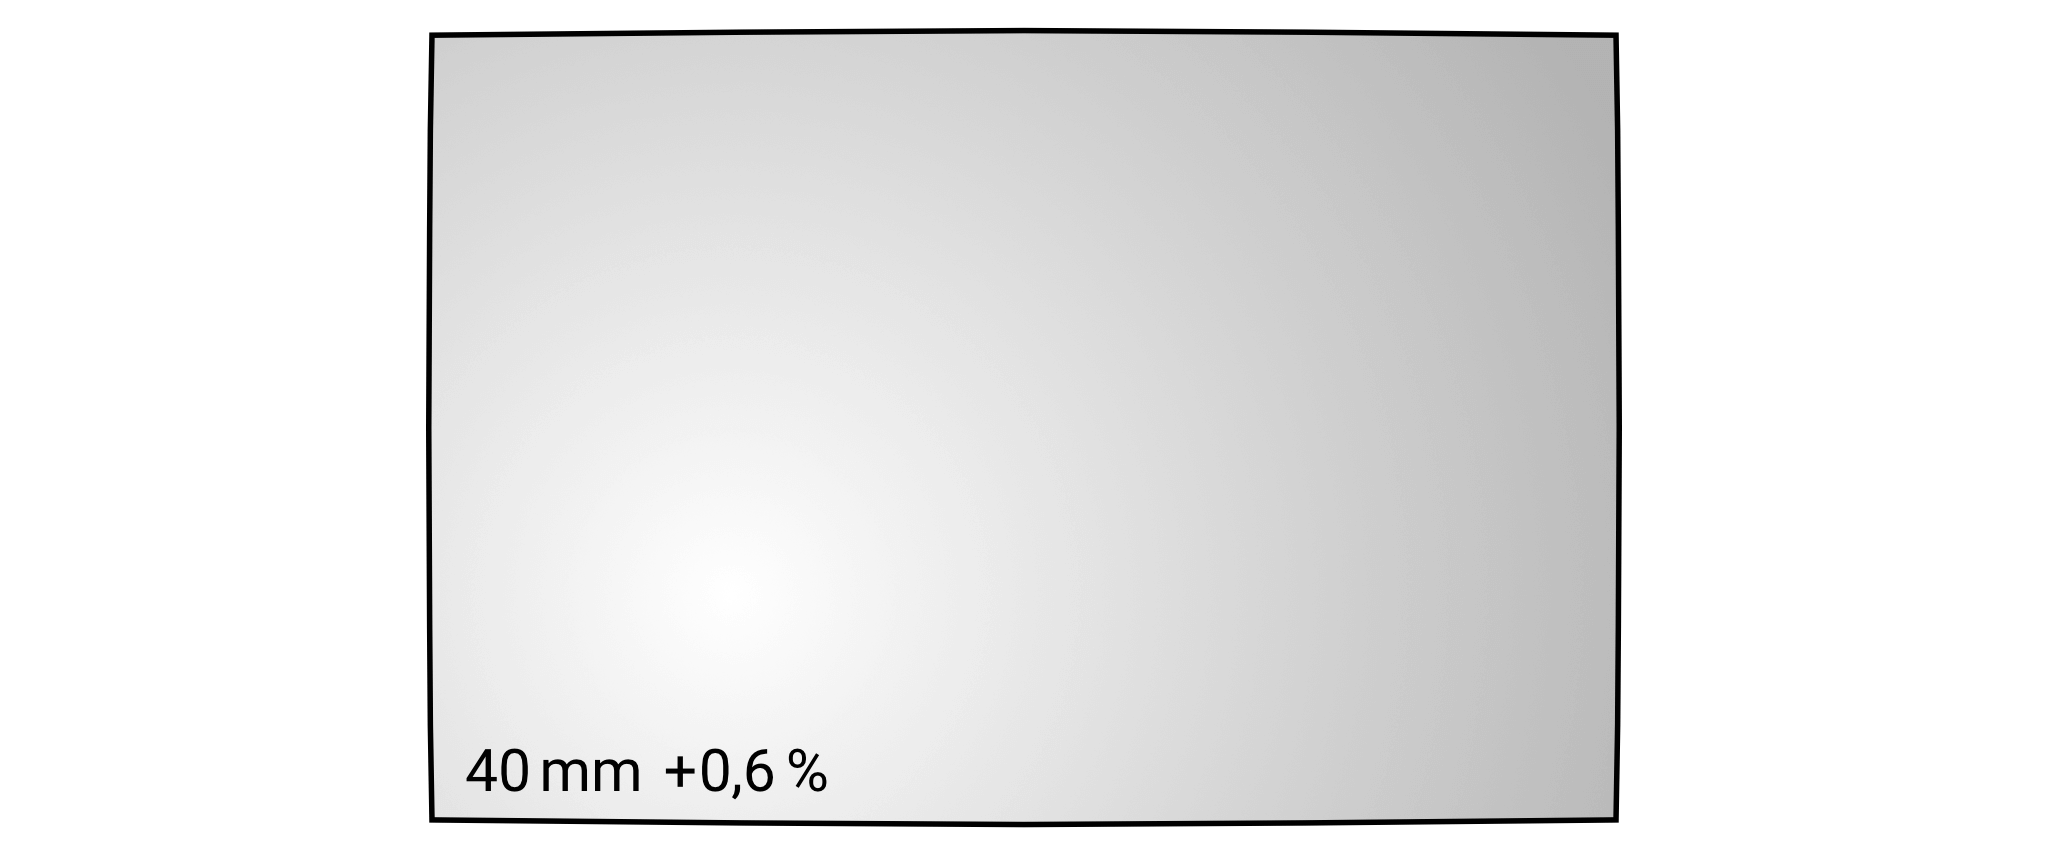 Geometrické zkreslení objektivu Nikkor Z 40 mm f/2